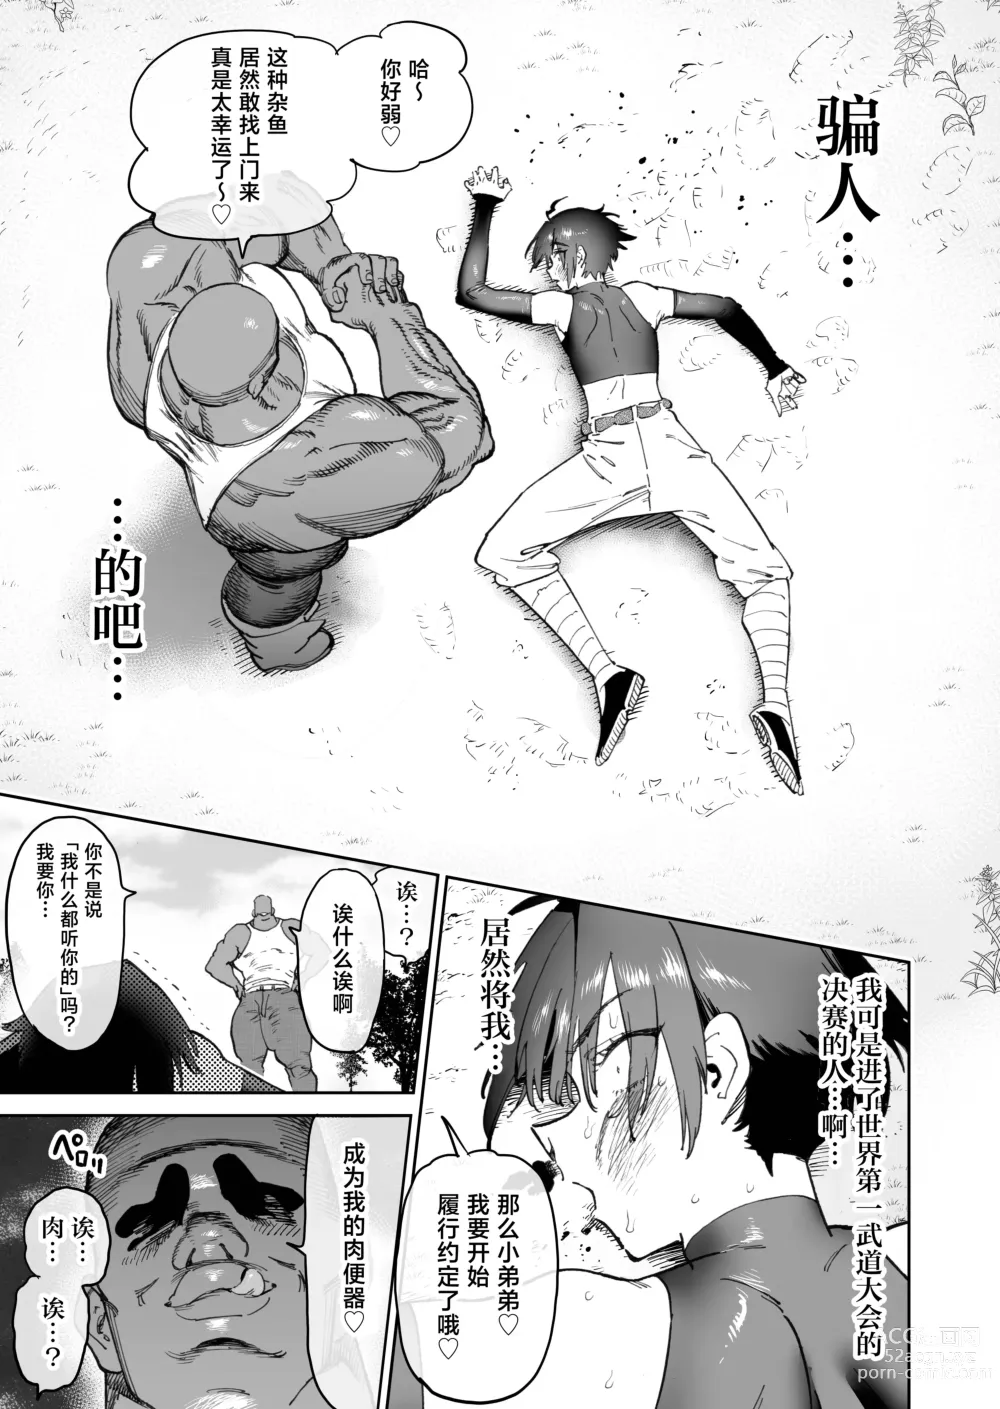 Page 8 of doujinshi 约好要变得更强大而告别的两名战友在2年后重逢时变成了母猪便器这件事